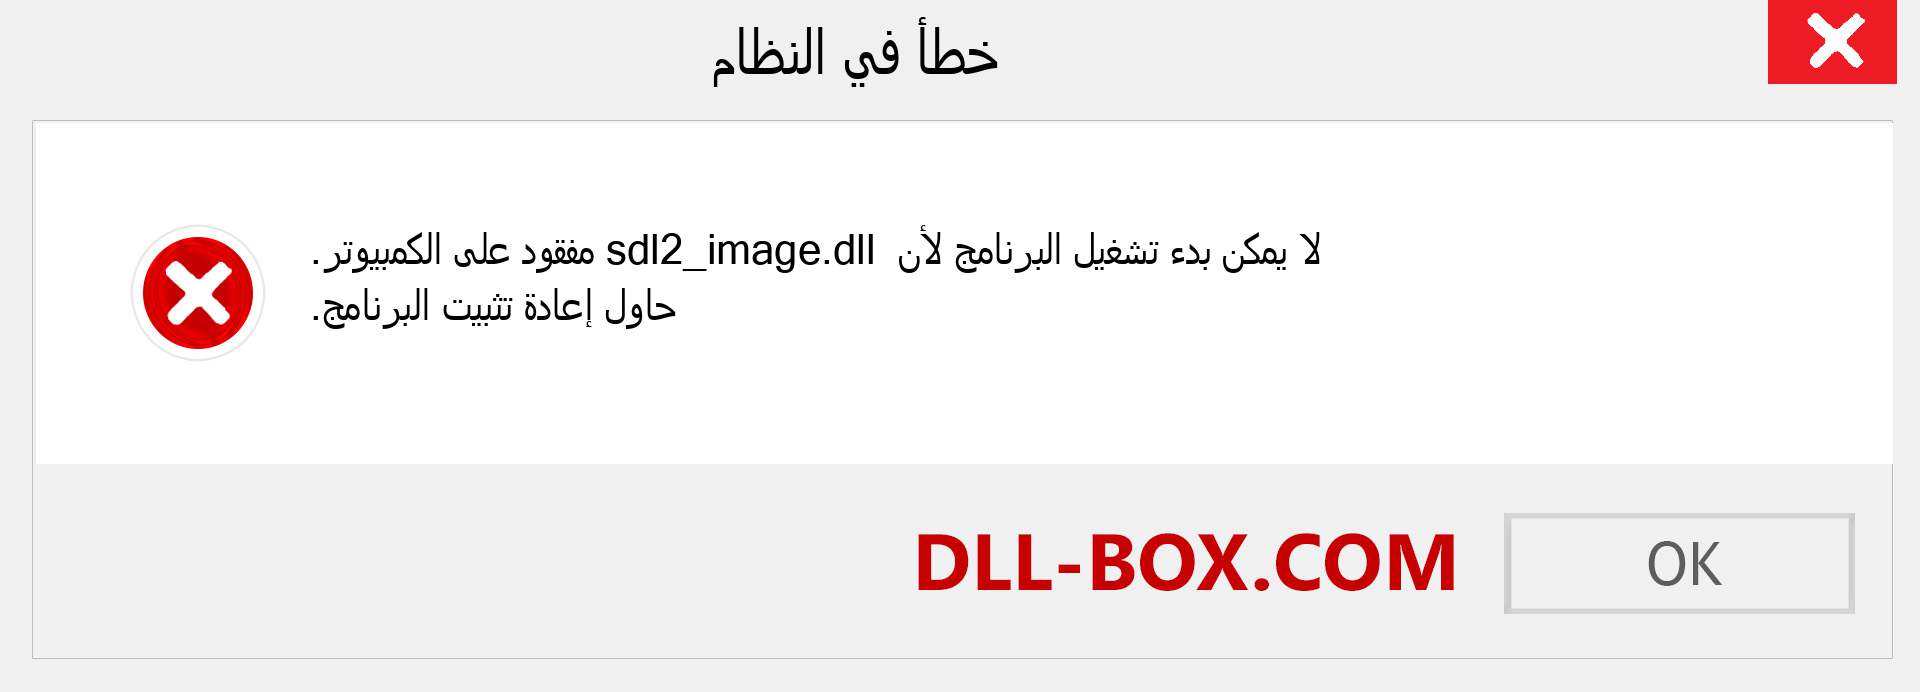 ملف sdl2_image.dll مفقود ؟. التنزيل لنظام التشغيل Windows 7 و 8 و 10 - إصلاح خطأ sdl2_image dll المفقود على Windows والصور والصور